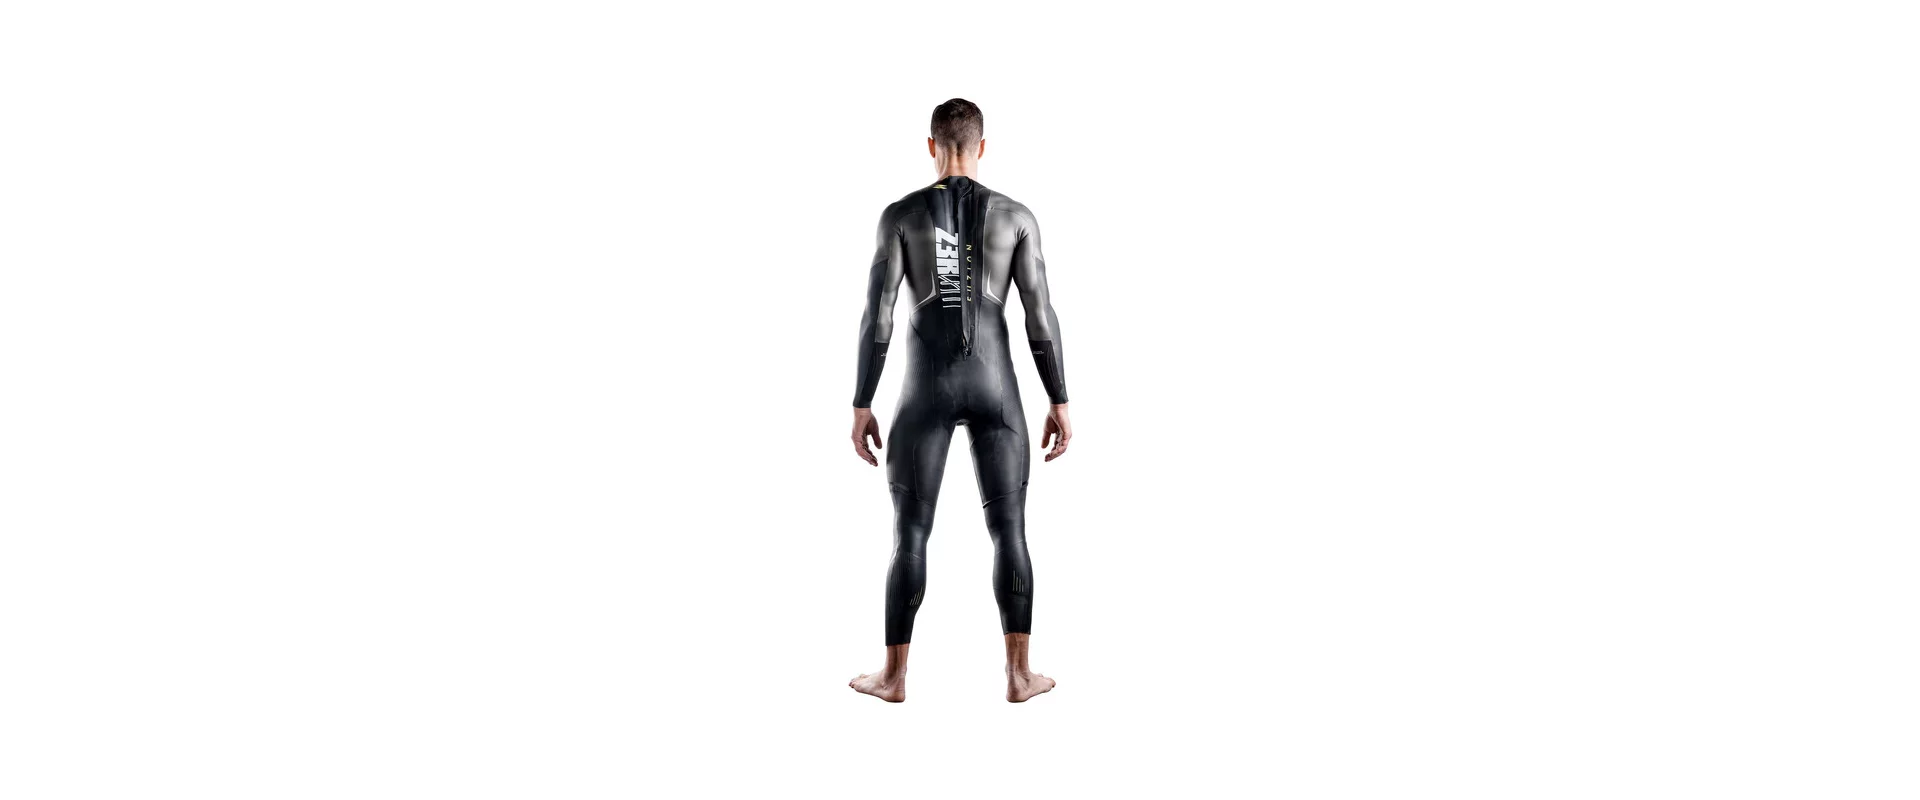 Z3R0D Fuzion Max Wetsuit / Мужской гидрокостюм для триатлона и открытой воды фото 4